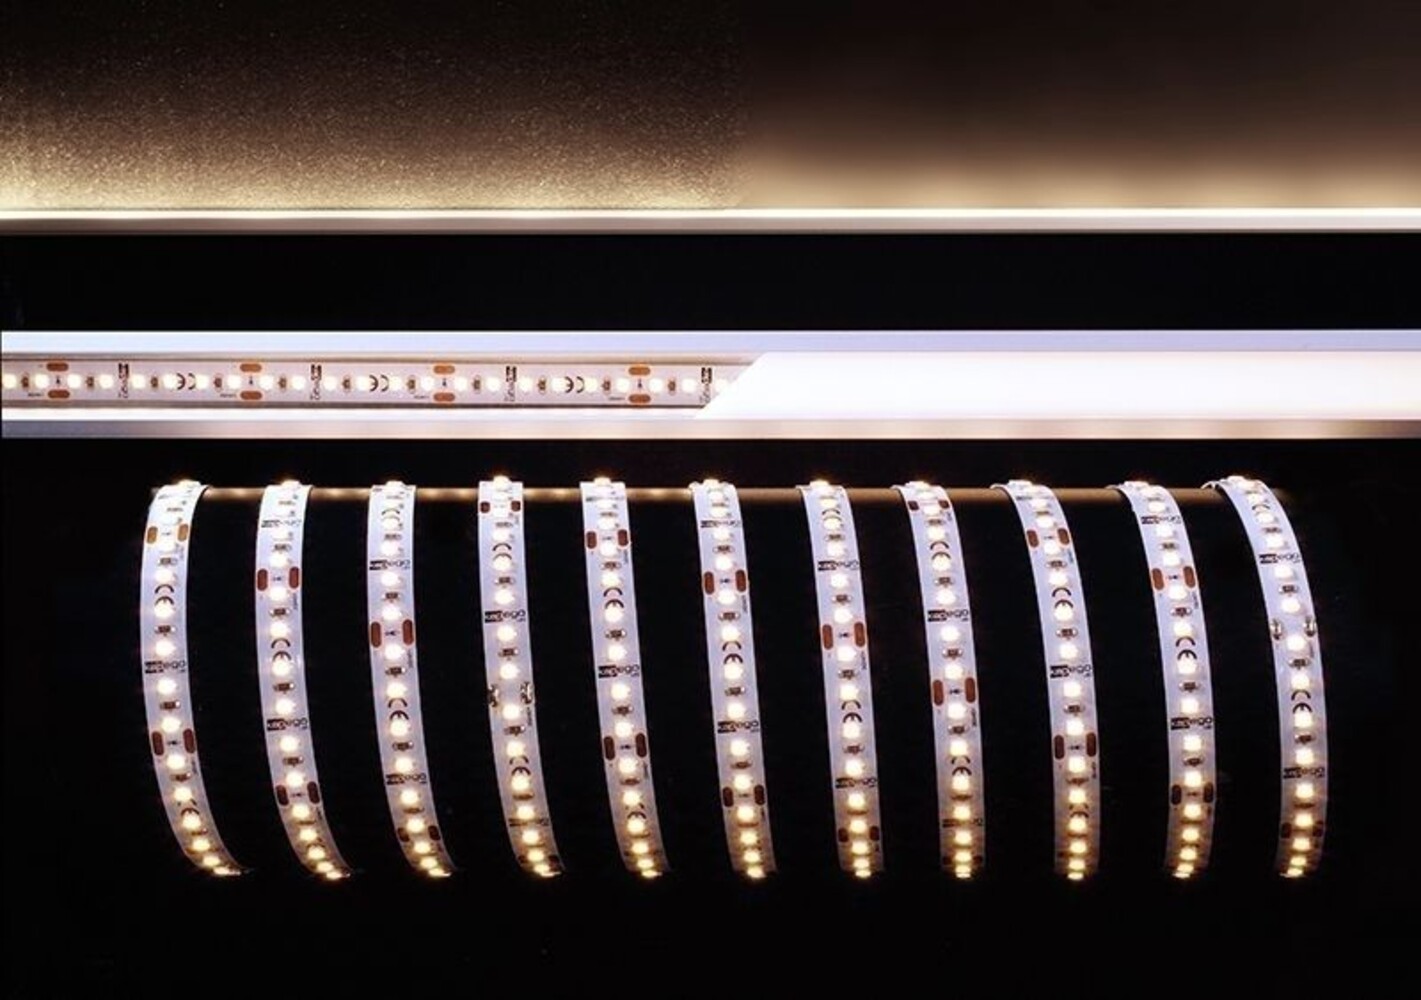 Leuchtender, flexibler LED Streifen von der Marke Deko-Light, ideal für Berleuchtungsdekoration